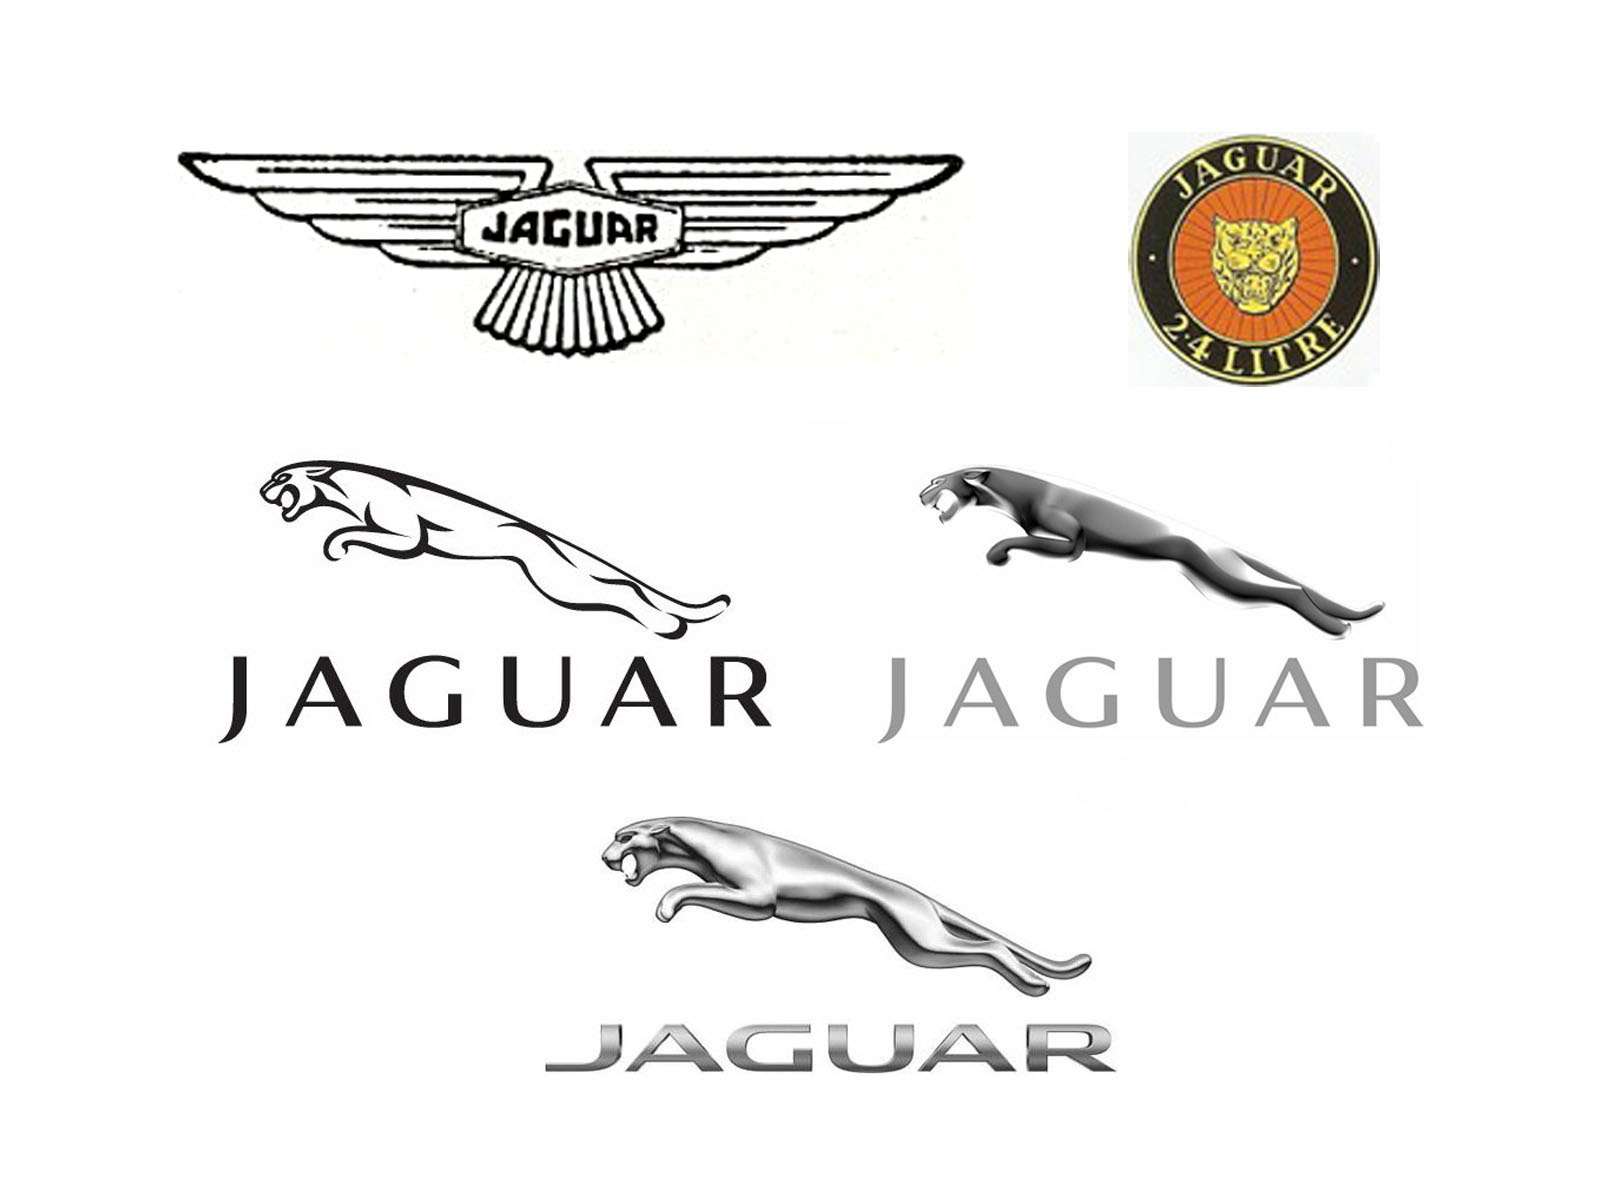 JAGUAR. Уильям Лайонс, владелец мотоциклетной фирмы Swallow sidecar company, в 1931-м замахнулся на автомобили, и компания была переименована в Jaguar. Это животное ассоциируется с грацией, скоростью, красотой и мощью. Первые автомобили под новой маркой отличала крылатая (англичане вообще неравнодушны к крыльям) эмблема SS (Swallow sidecar). Вскоре ее место занял логотип с головой ягуара. Затем англичане перешли на статуэтки стоящих ягуаров, а после 1938 года изображению придали динамичности.